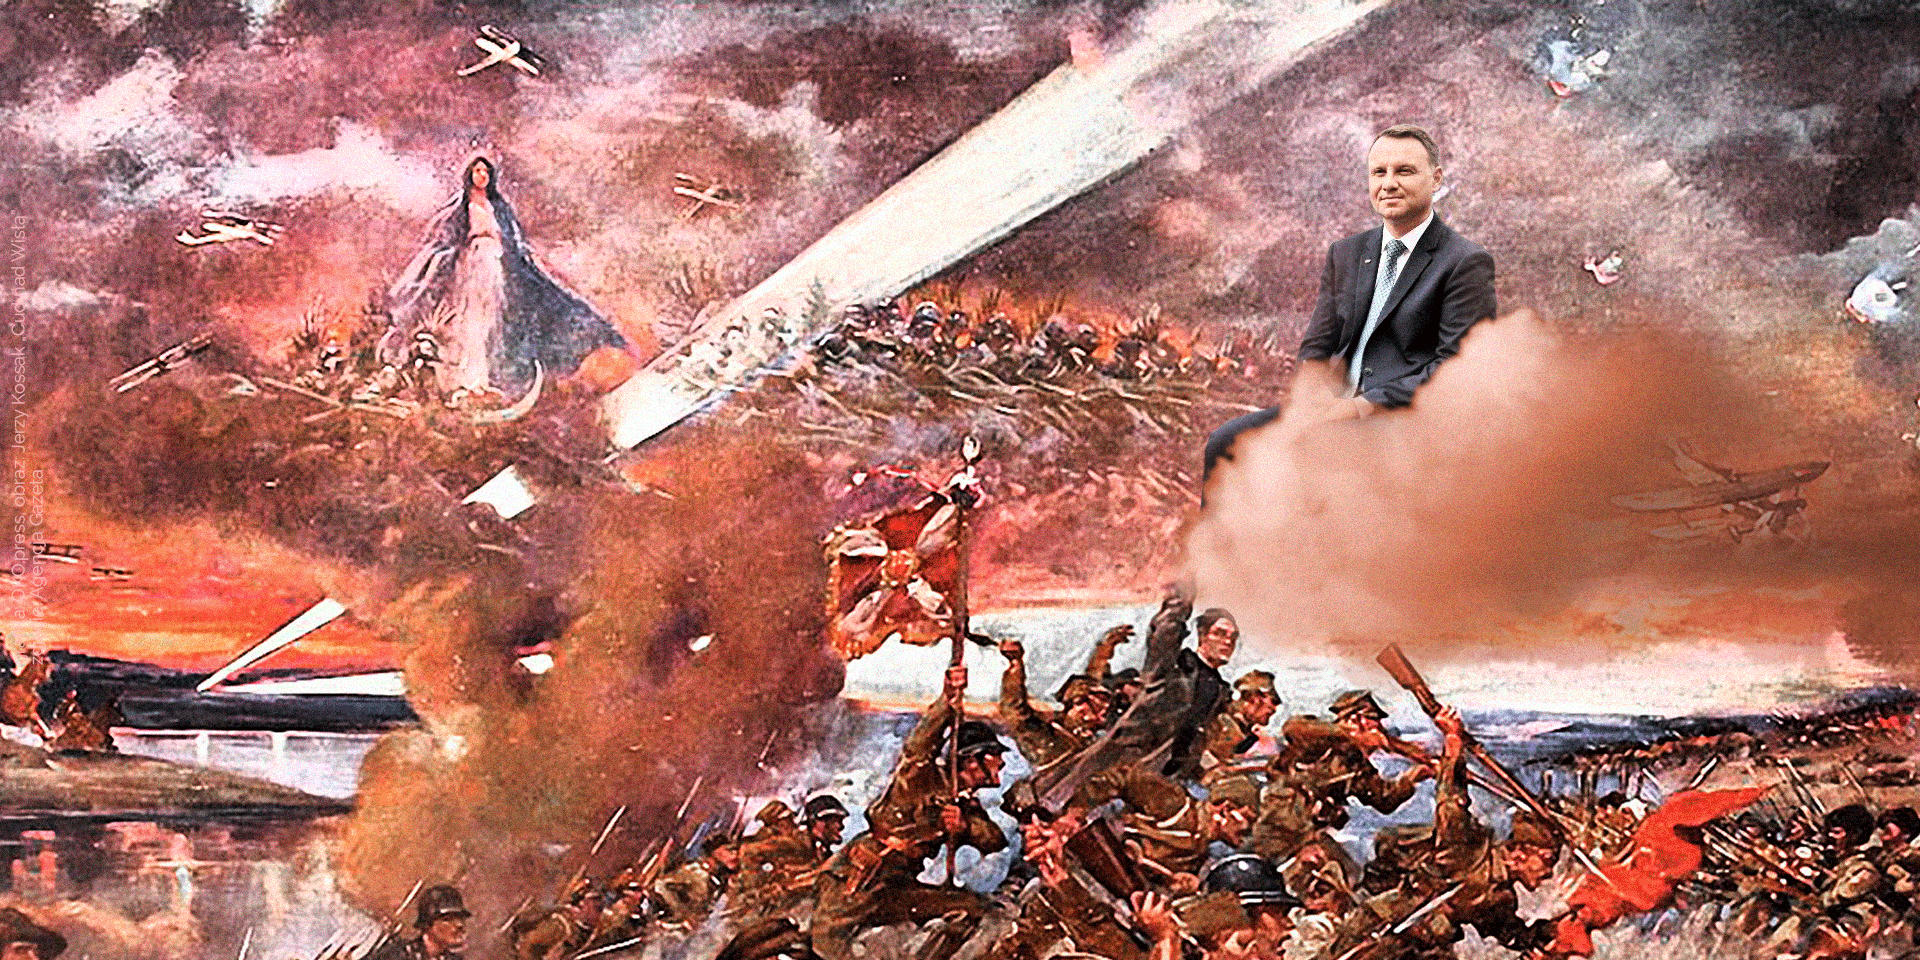 Grafika z obrazami bitwy warszawskiej o Andrzejem Dudą w obłoku